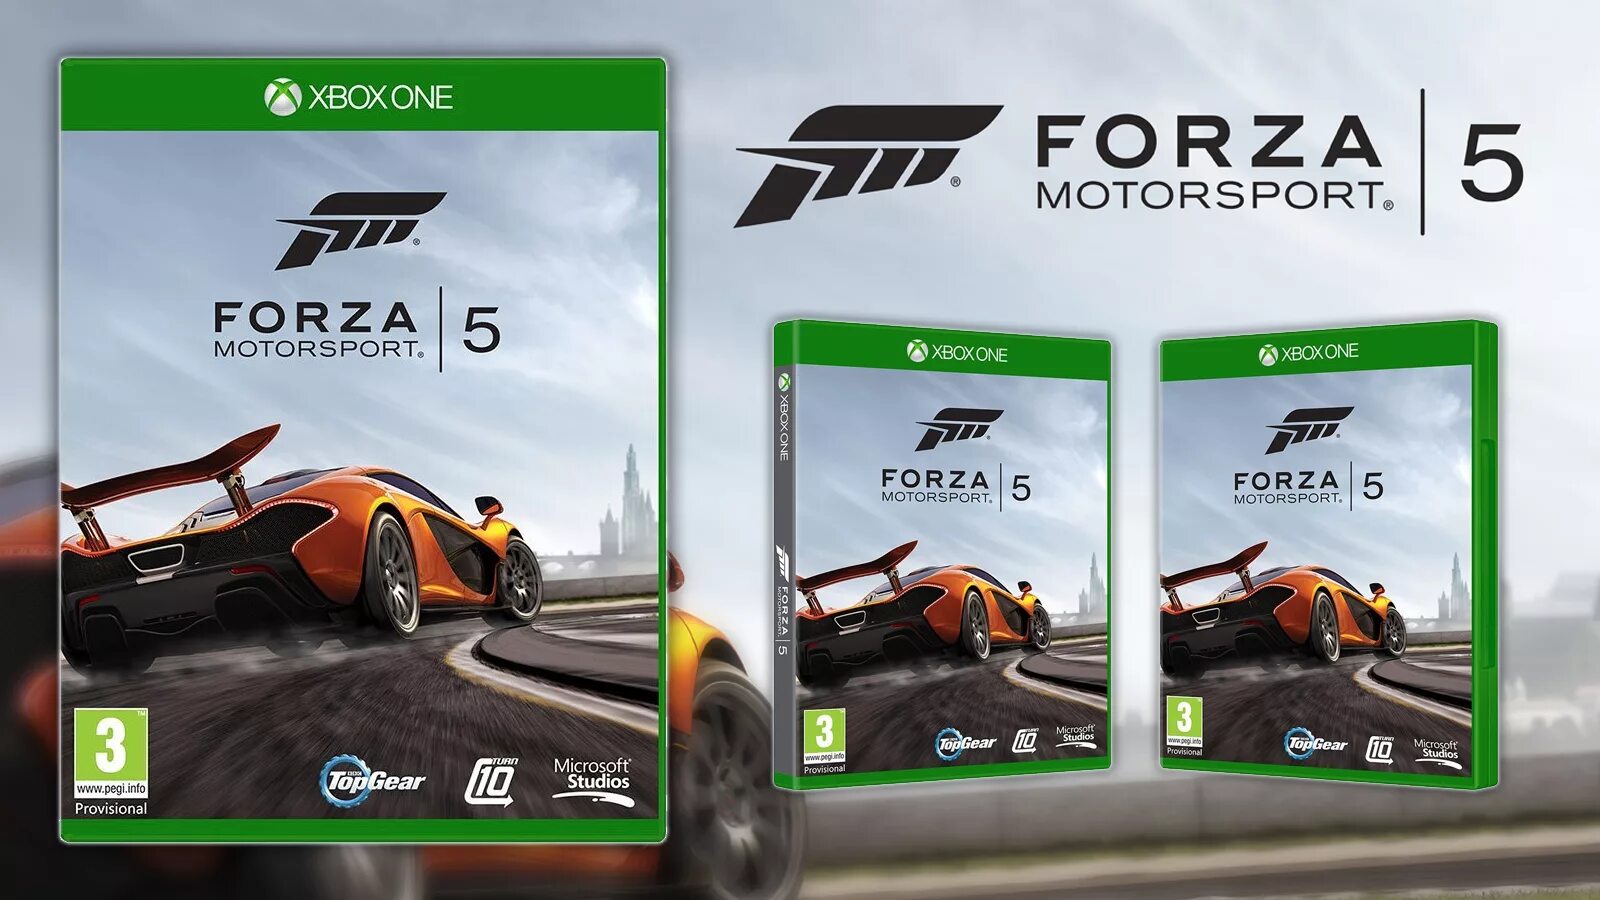 Форза хбокс. Диск Forza Horizon 5 на Xbox one. Forza 5 Xbox one. Forza Motorsport 5 Xbox 360. Forza Motorsport 5 Xbox one обложка.